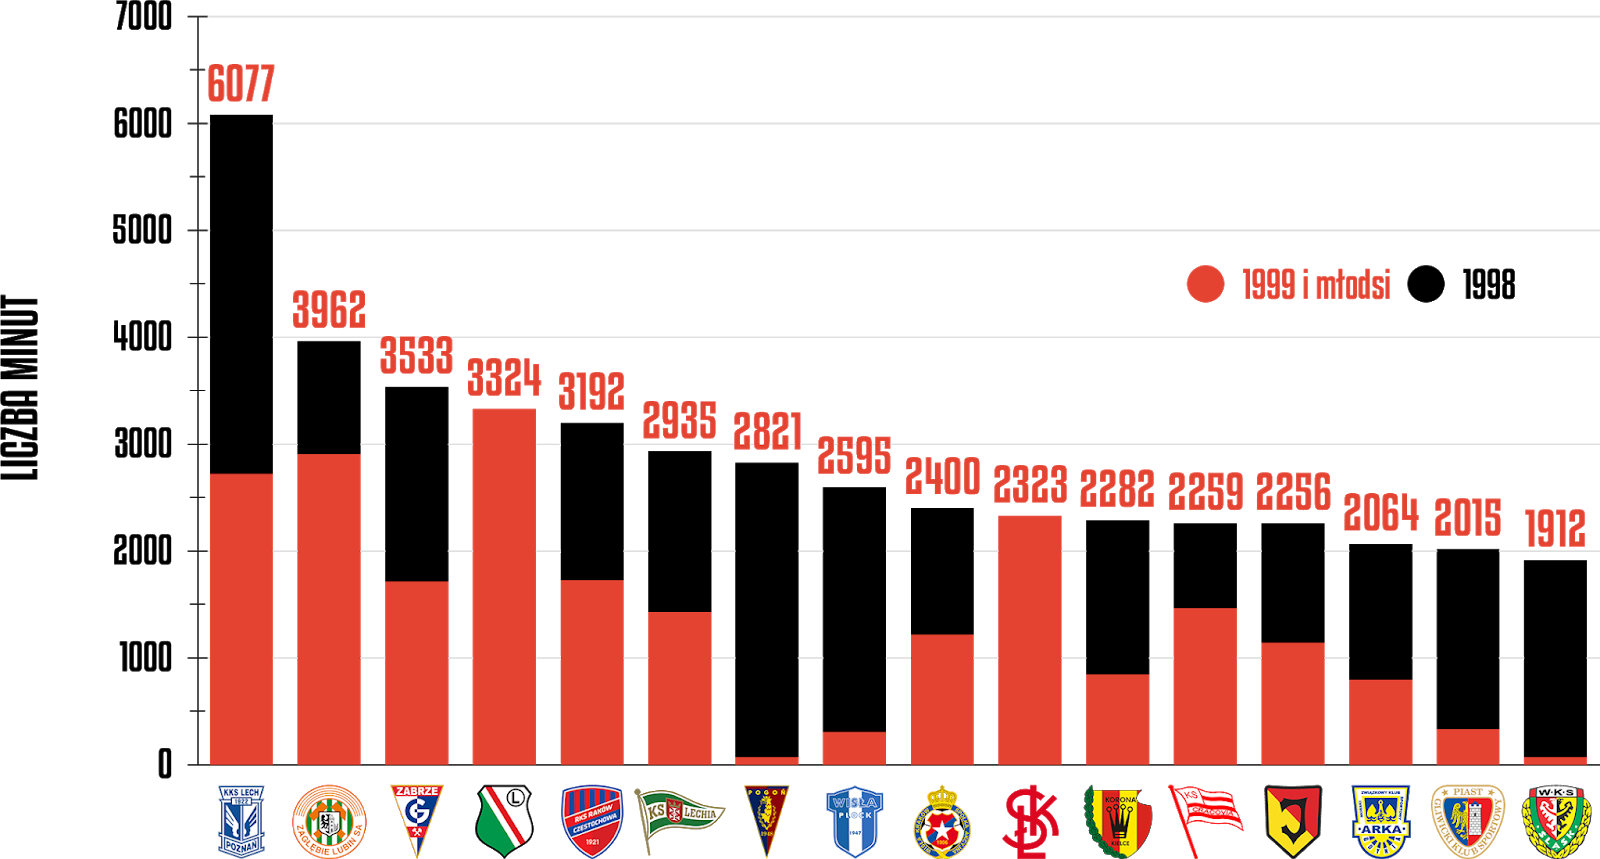 Klasyfikacja klubów pod względem rozegranych minut przez młodzieżowców po 21 kolejkach PKO Ekstraklasy<br><br>Źródło: Opracowanie własne na podstawie ekstrastats.pl<br><br>graf. Bartosz Urban